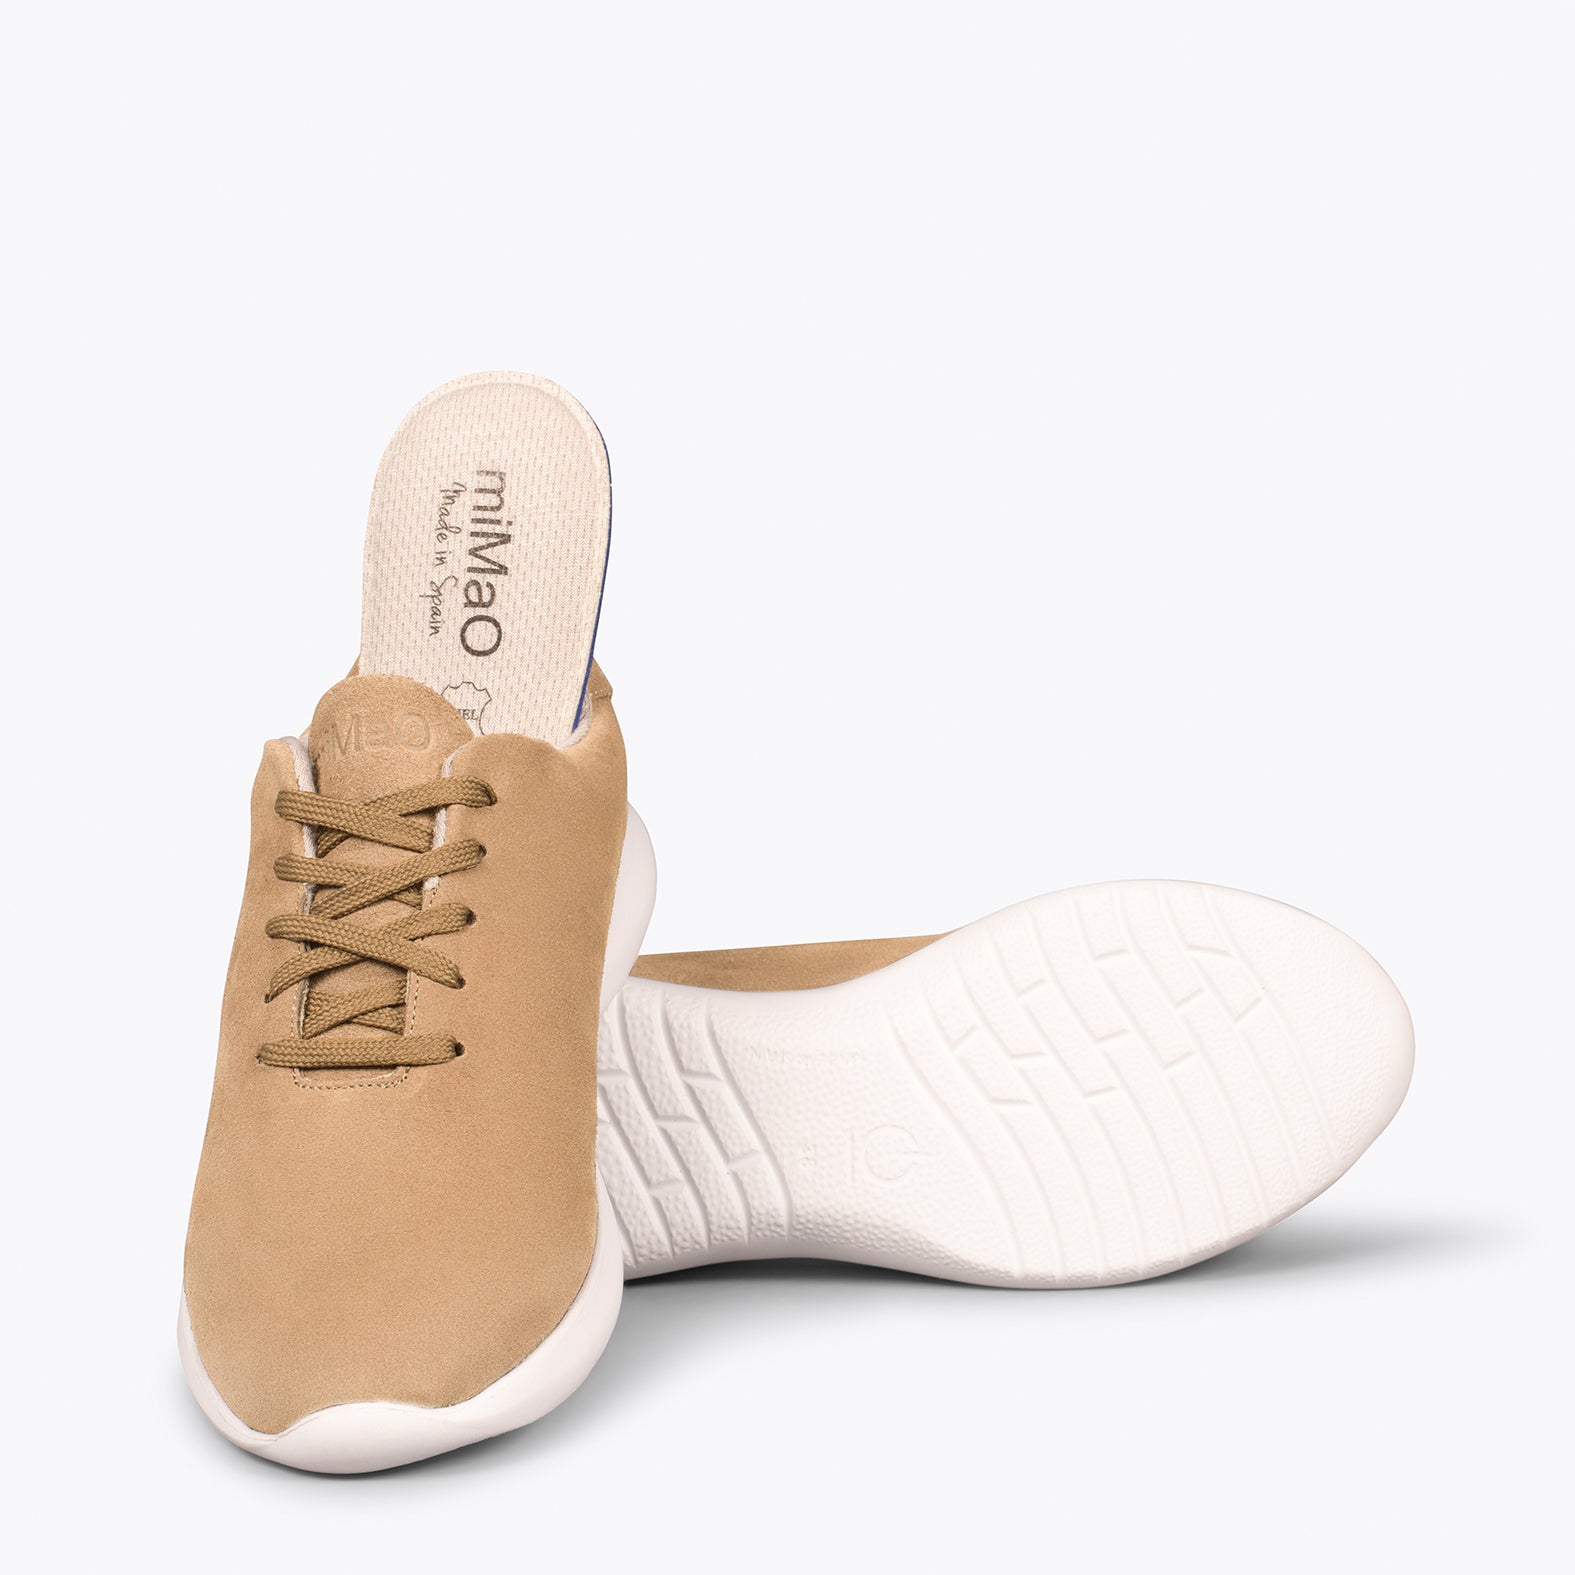 WALK – BEIGE comfortable women’s sneakers